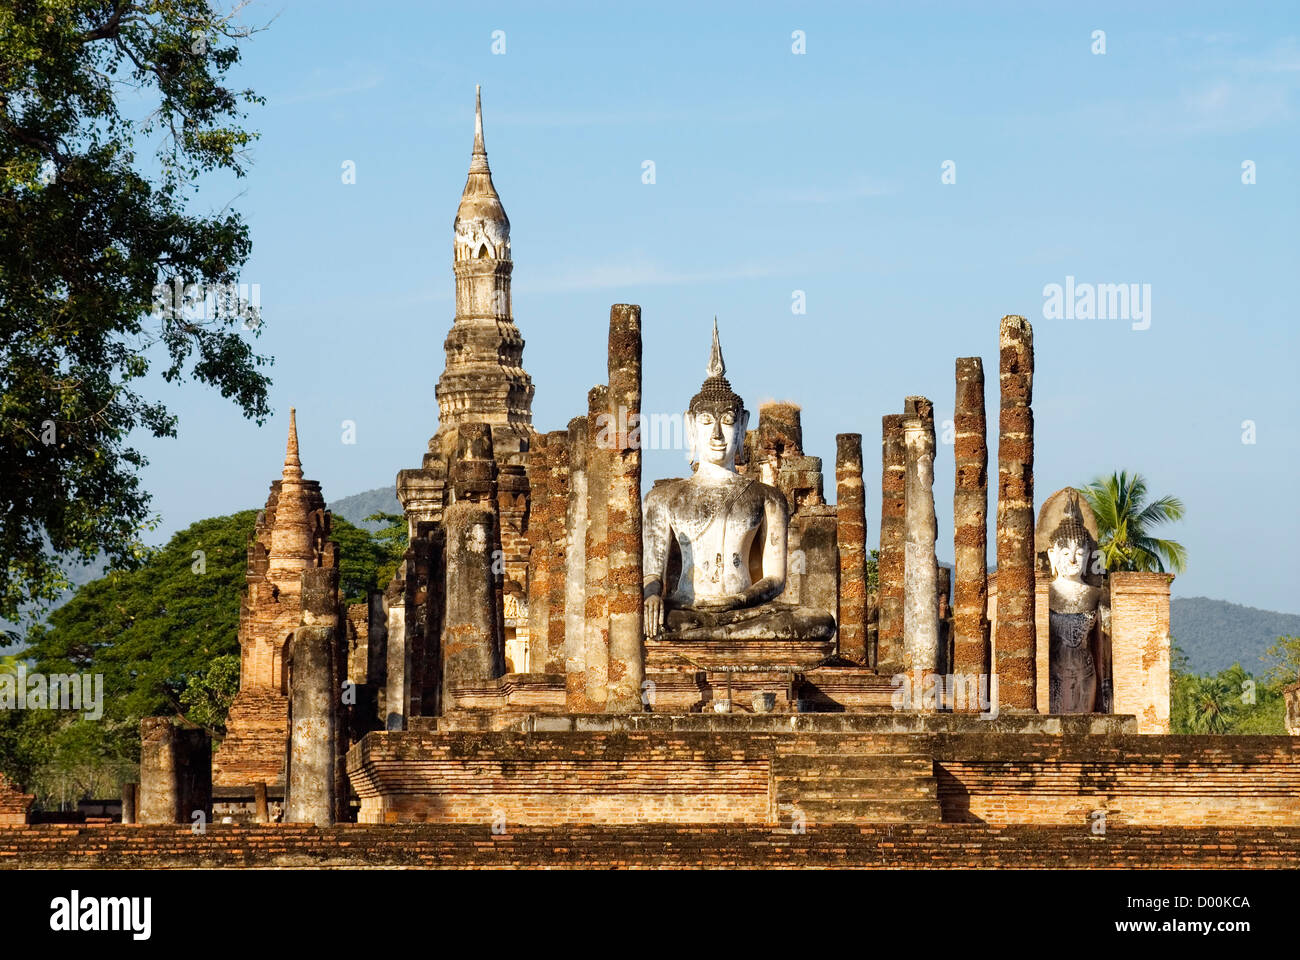 Wat Mahathat, Sukhothai historischen Park, Thailand | Wat Mahathat, Sukhothai Geschichtsparks Sukhothai, Thailand Stockfoto